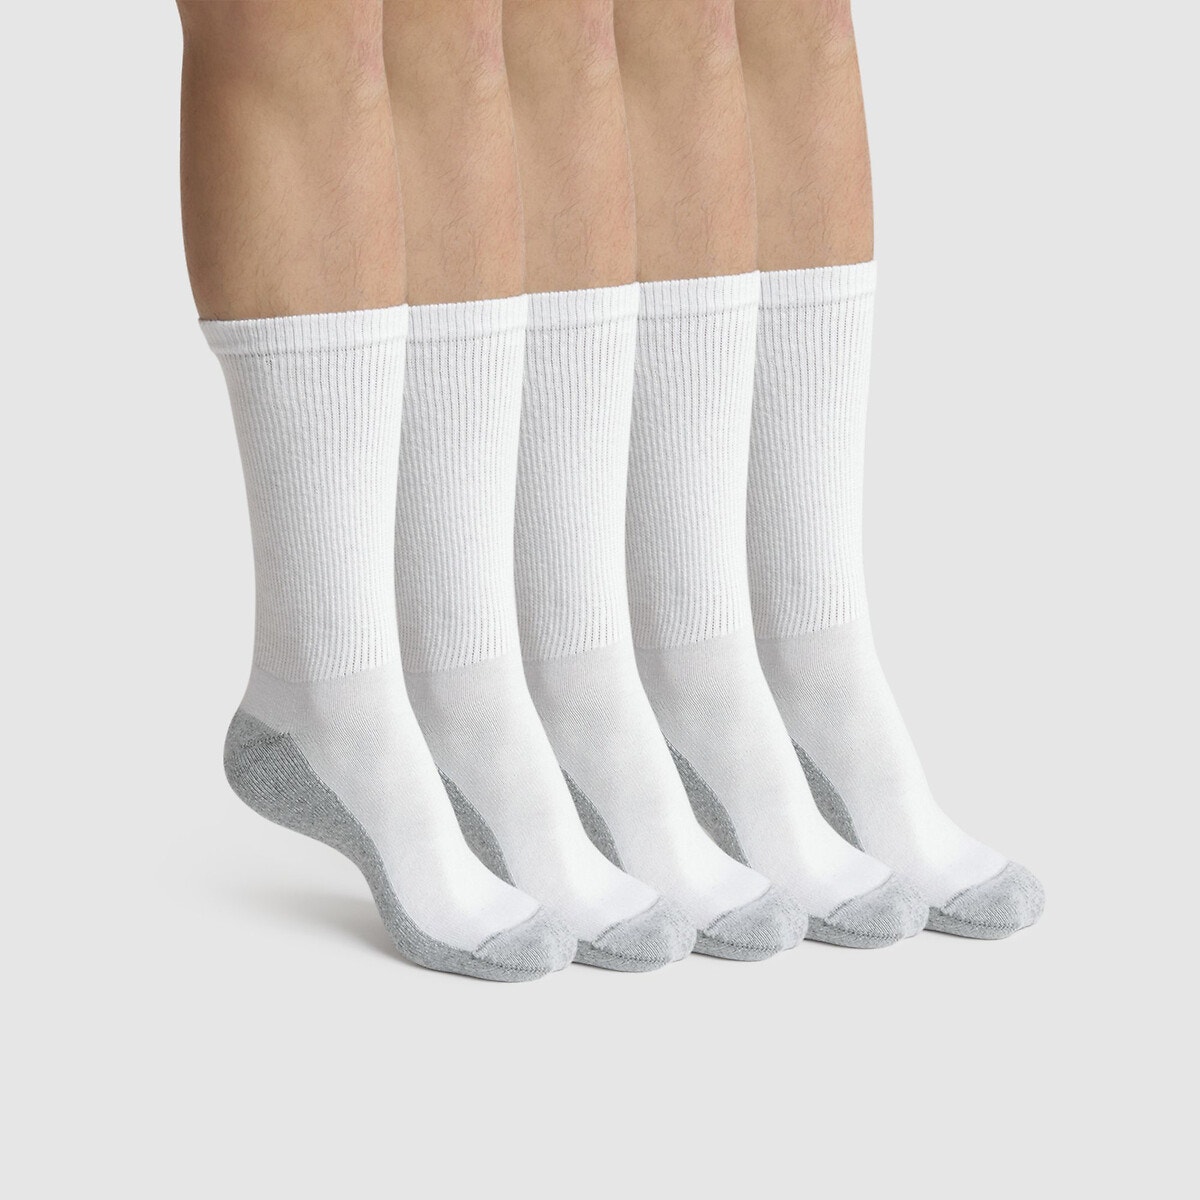 Σετ 6 ζευγάρια αθλητικές κάλτσες, Ecodim Sport